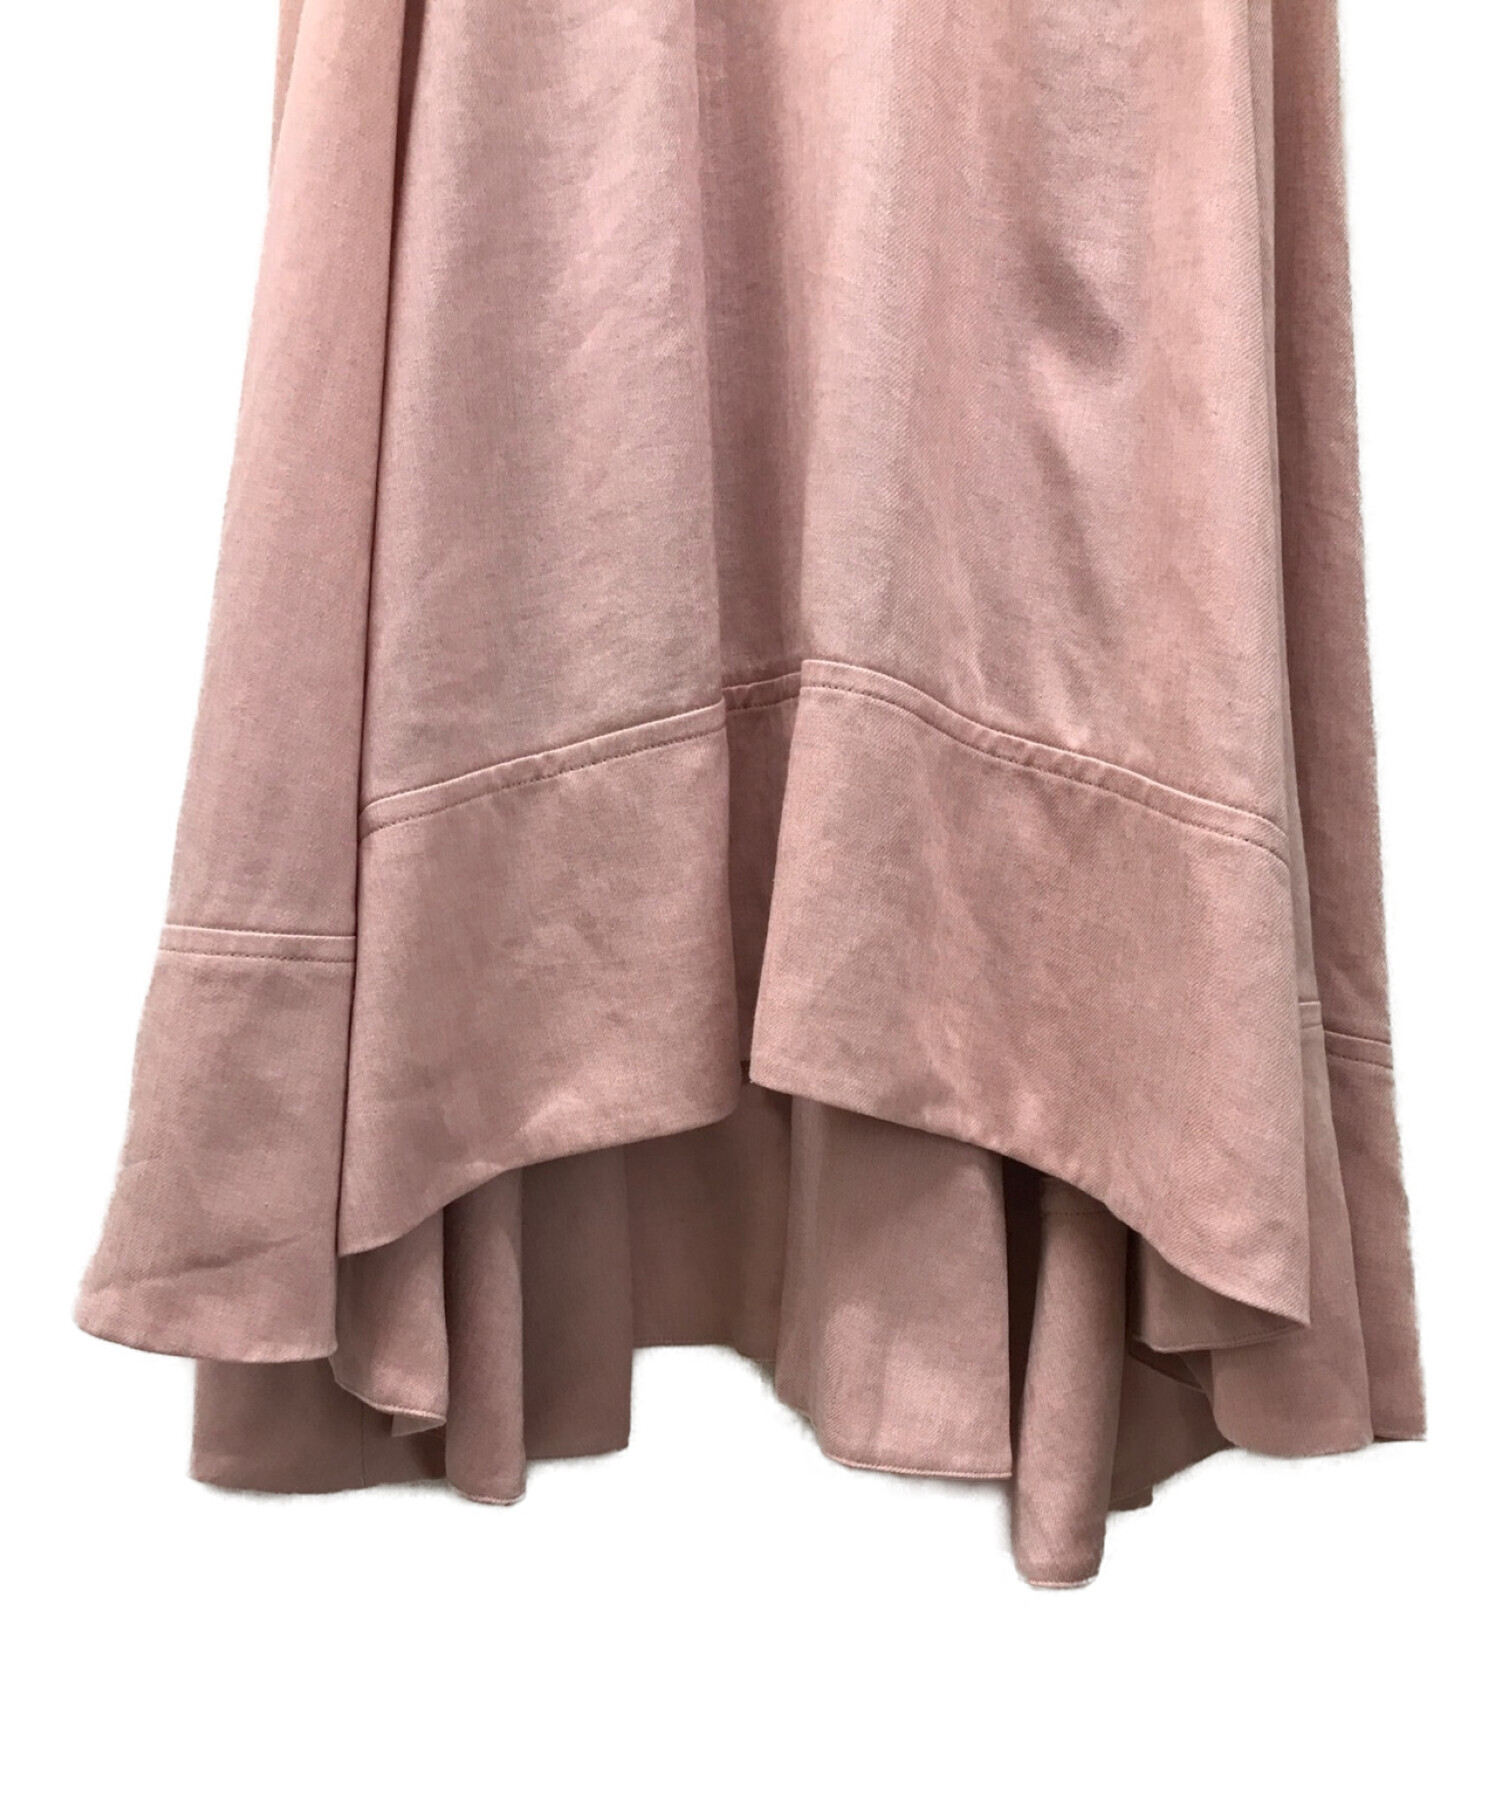 DRESSTERIOR (ドレステリア) リネン混ロングスカート ピンク サイズ:36 未使用品